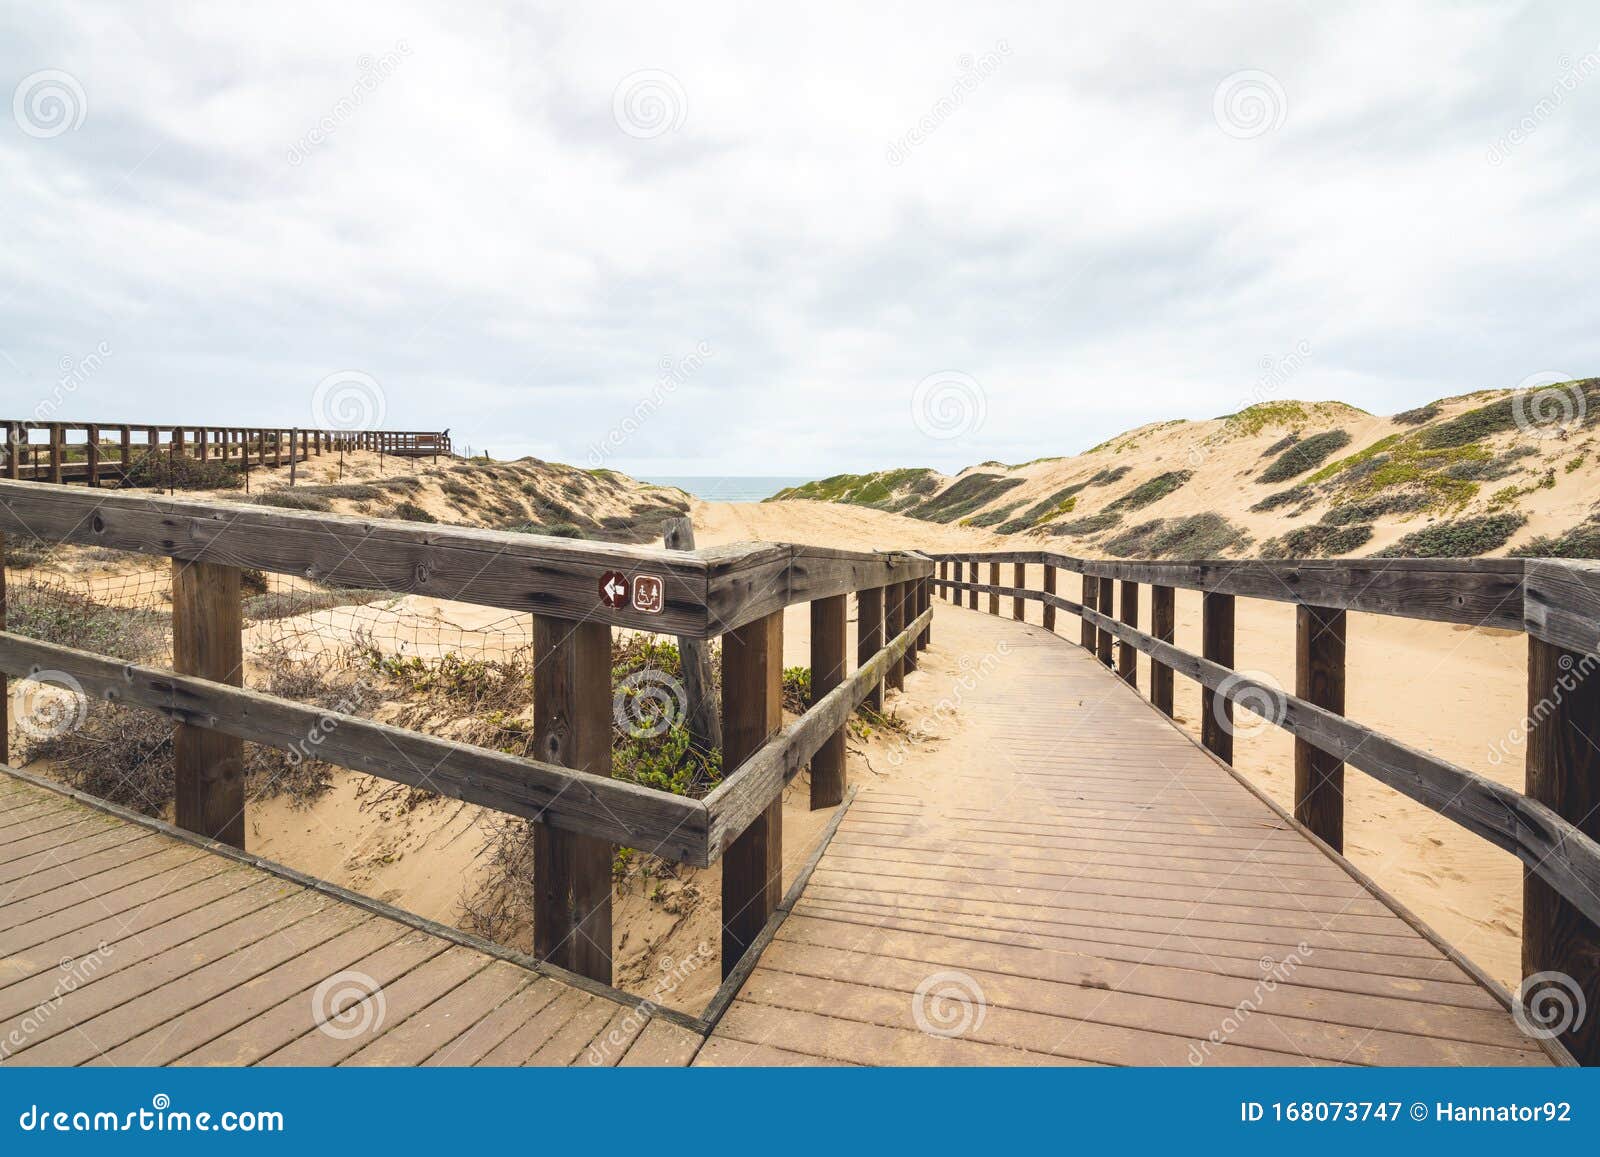 wooden boardwalk through sand dunes. oceano, california